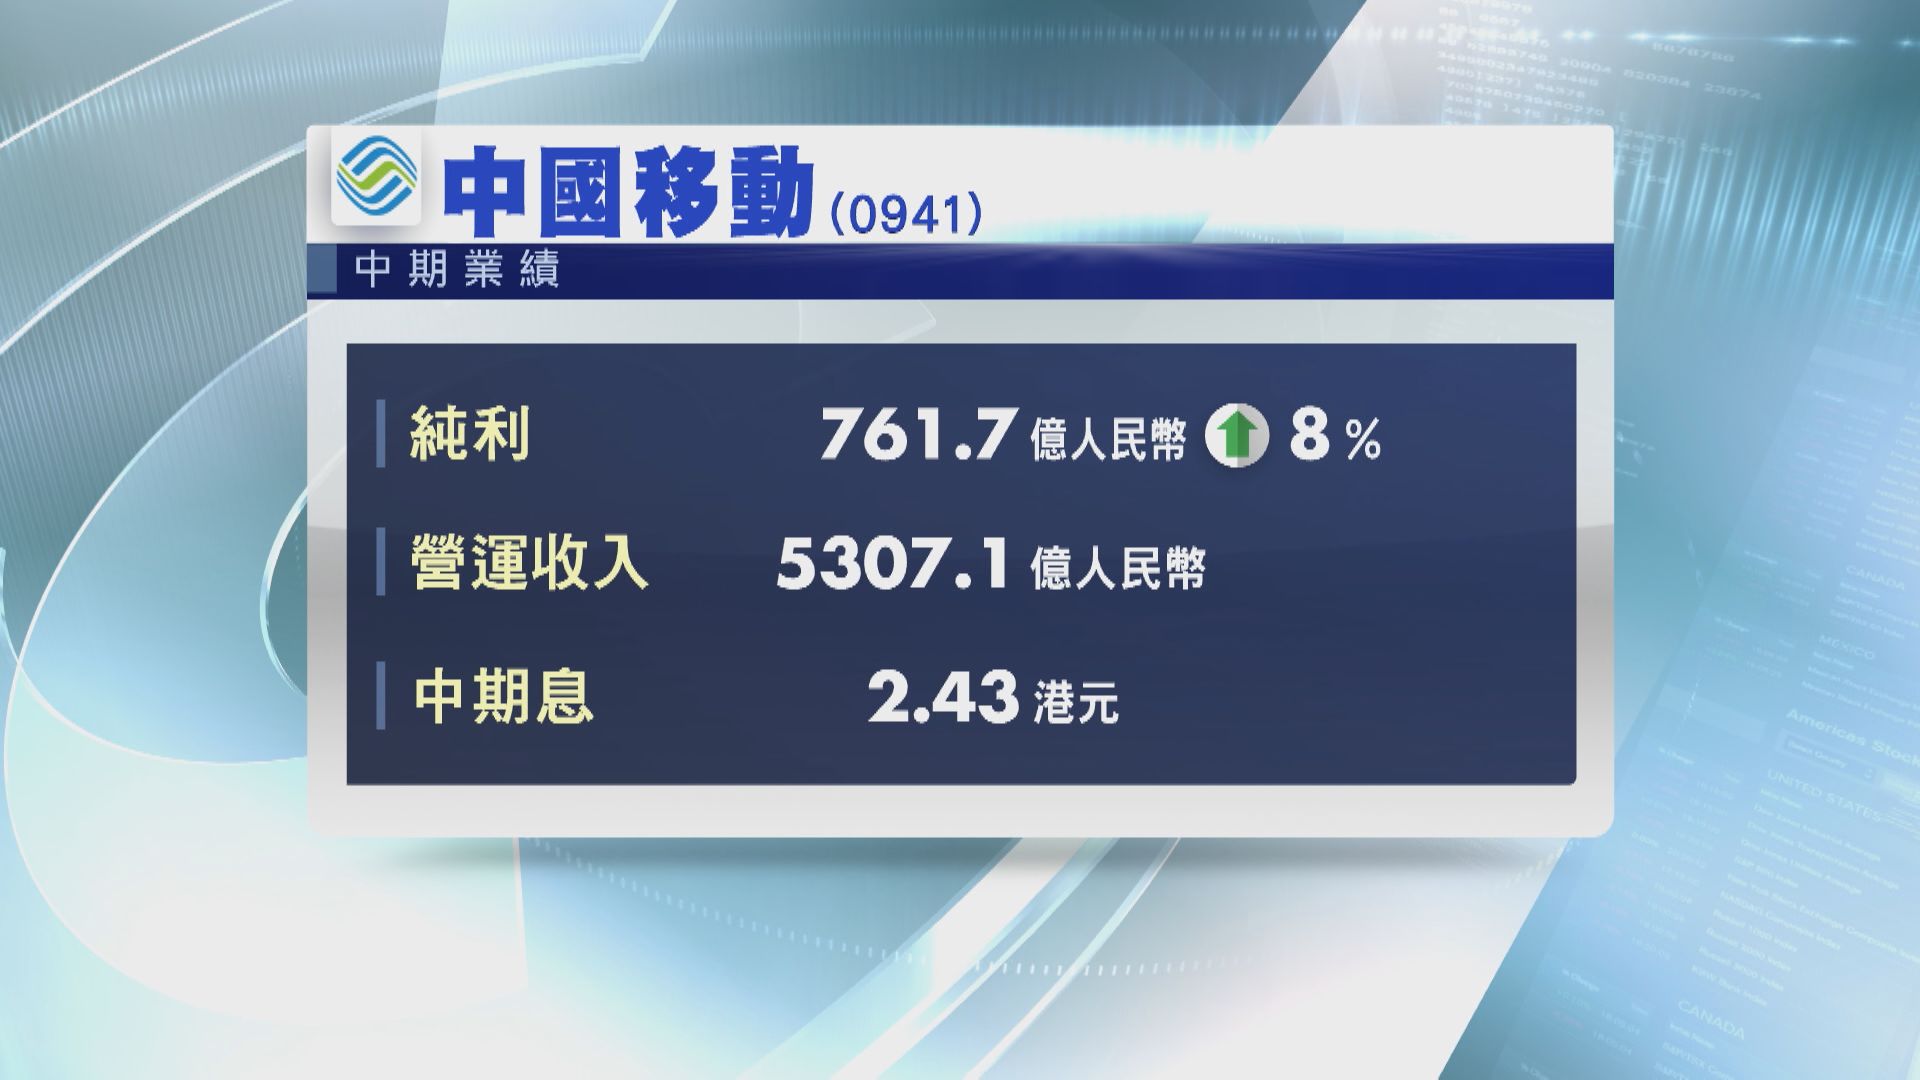 【藍籌業績】中移半年多賺8% 派息增10%至2.43港元